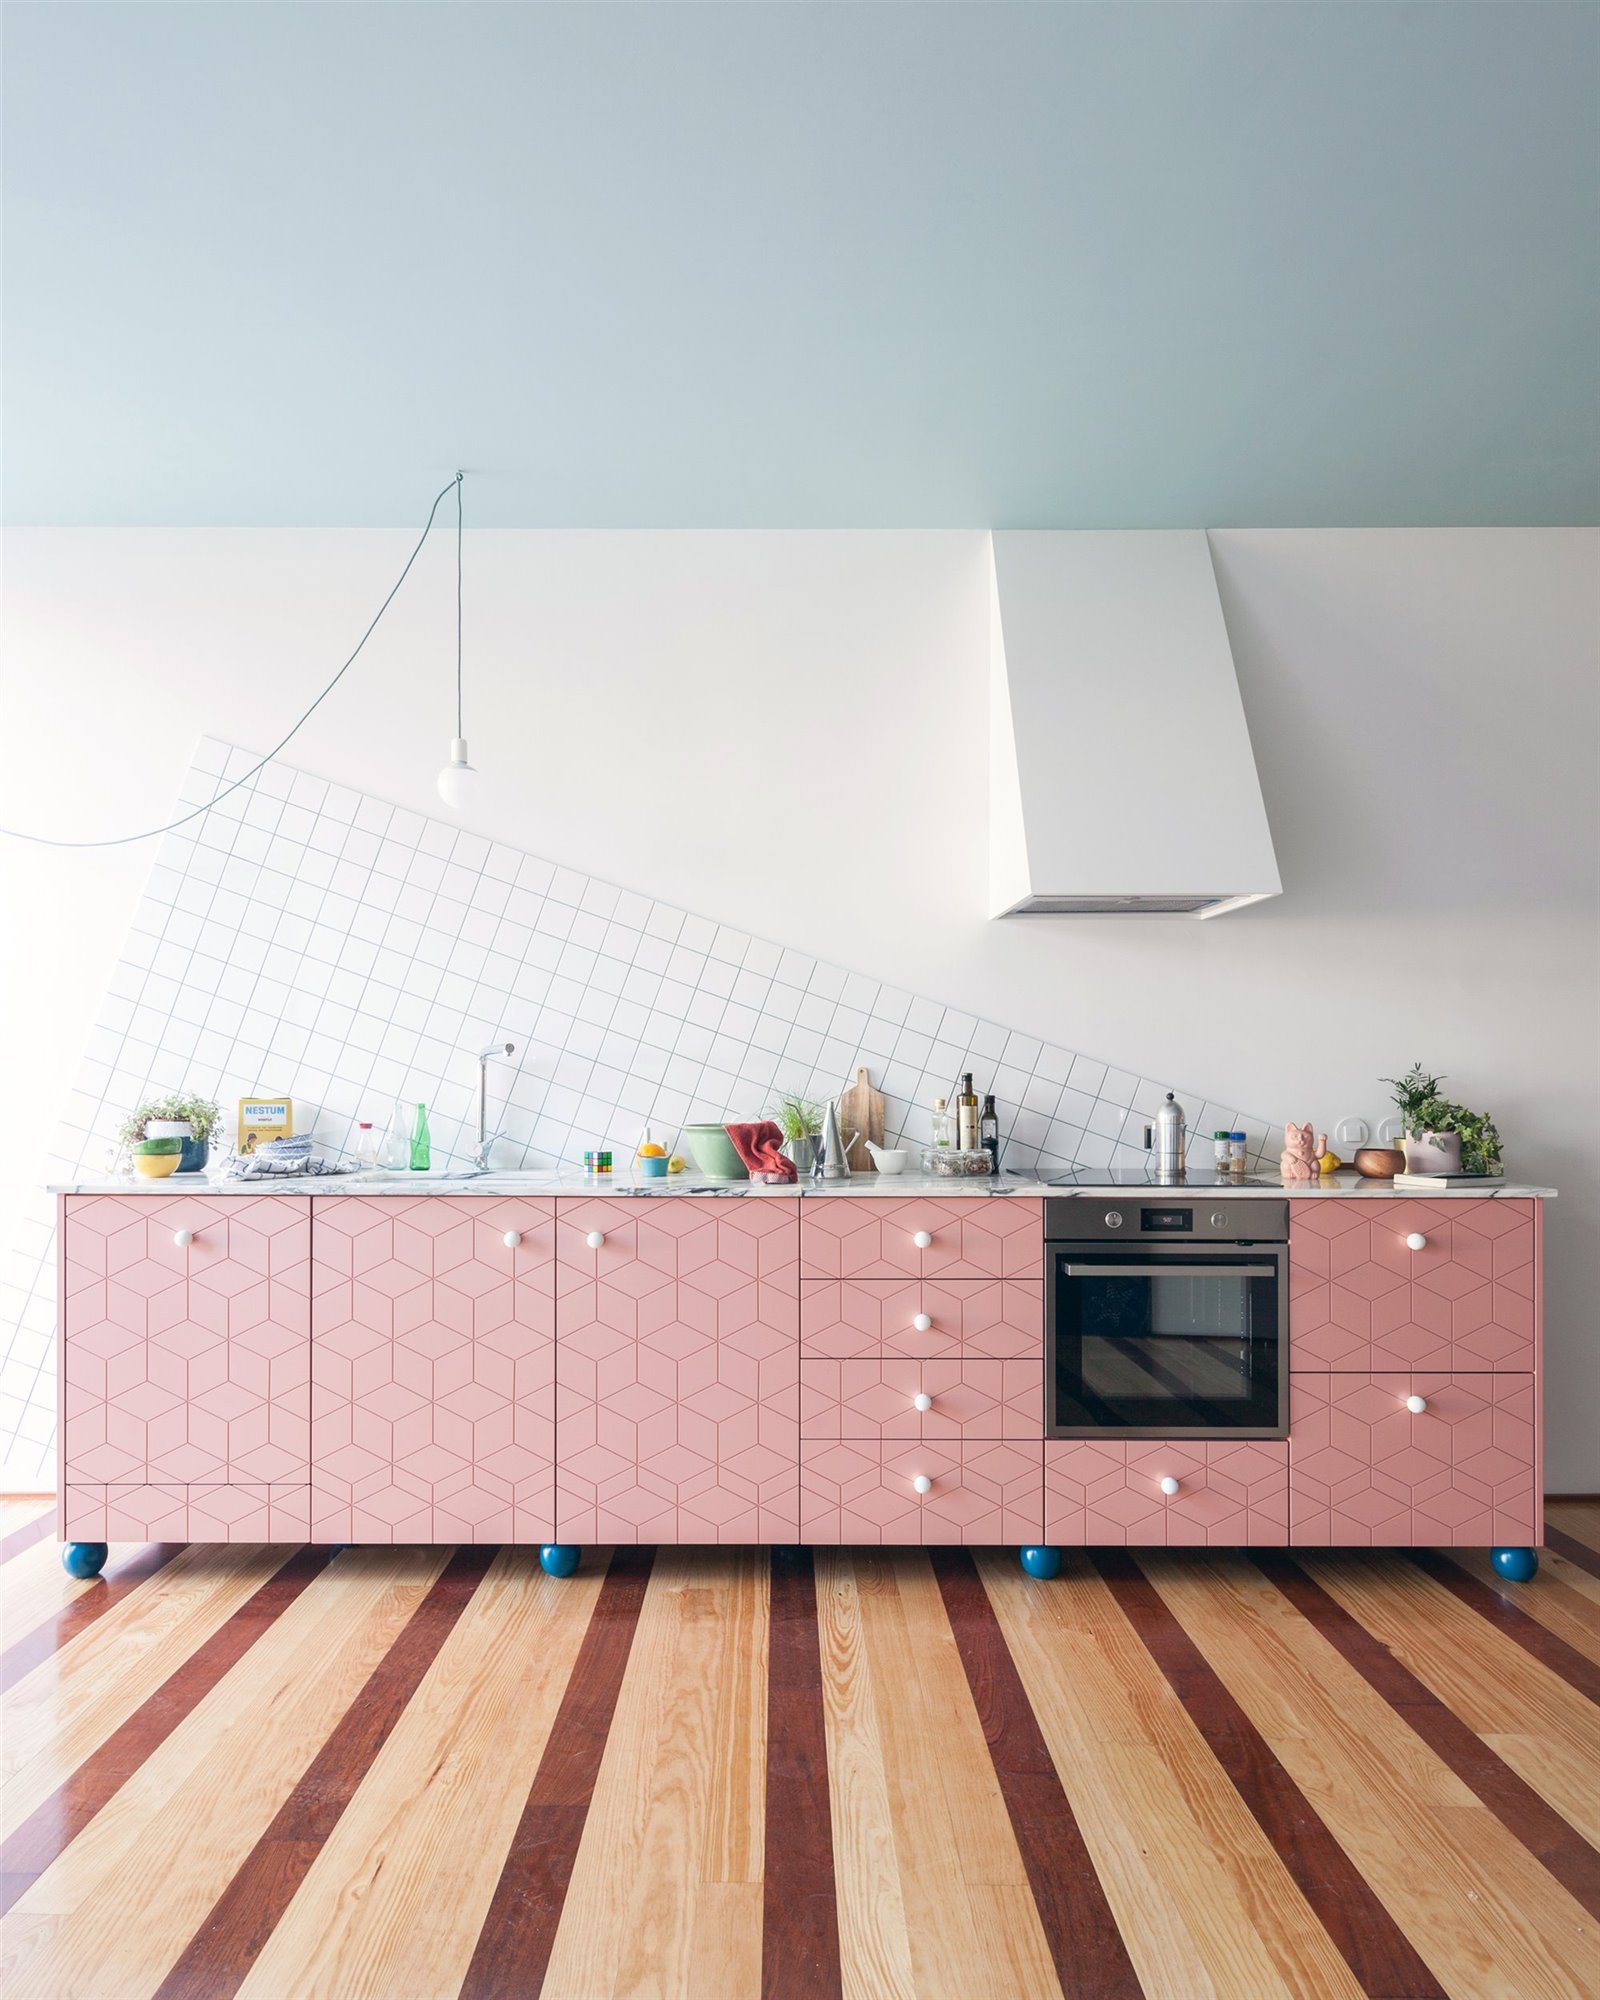 Mobiliario cocina en color rosa y tiradores blancos, suelo de madera con motivos de rayas